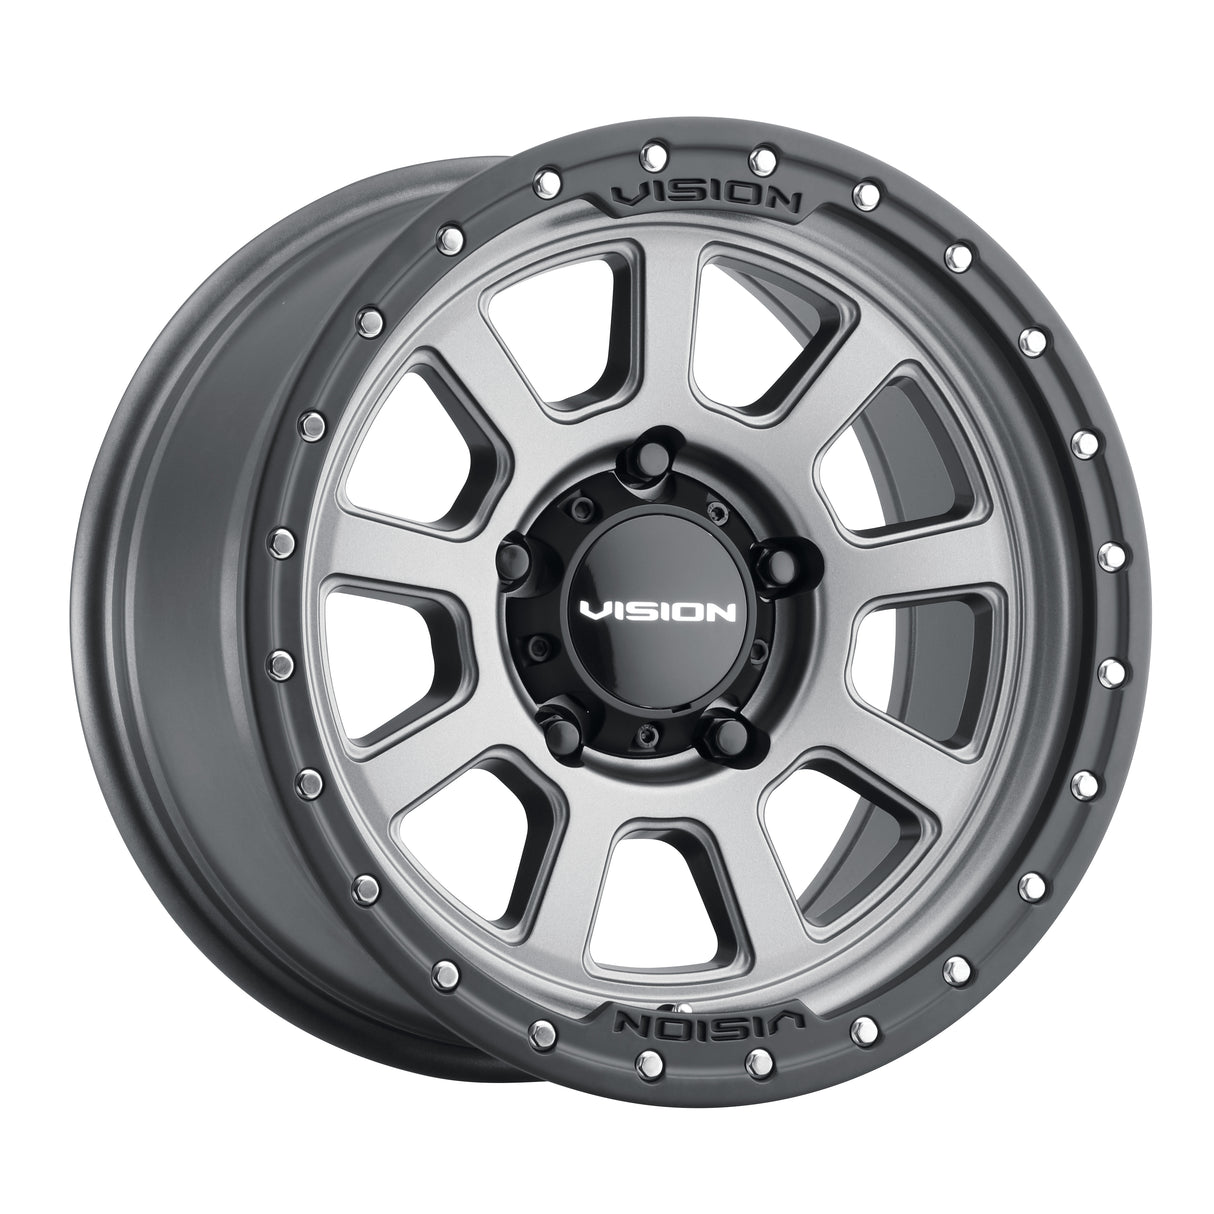 Vision Wheel - Ojos - 350 Satin Grey- 8x6.5" 20"x9"